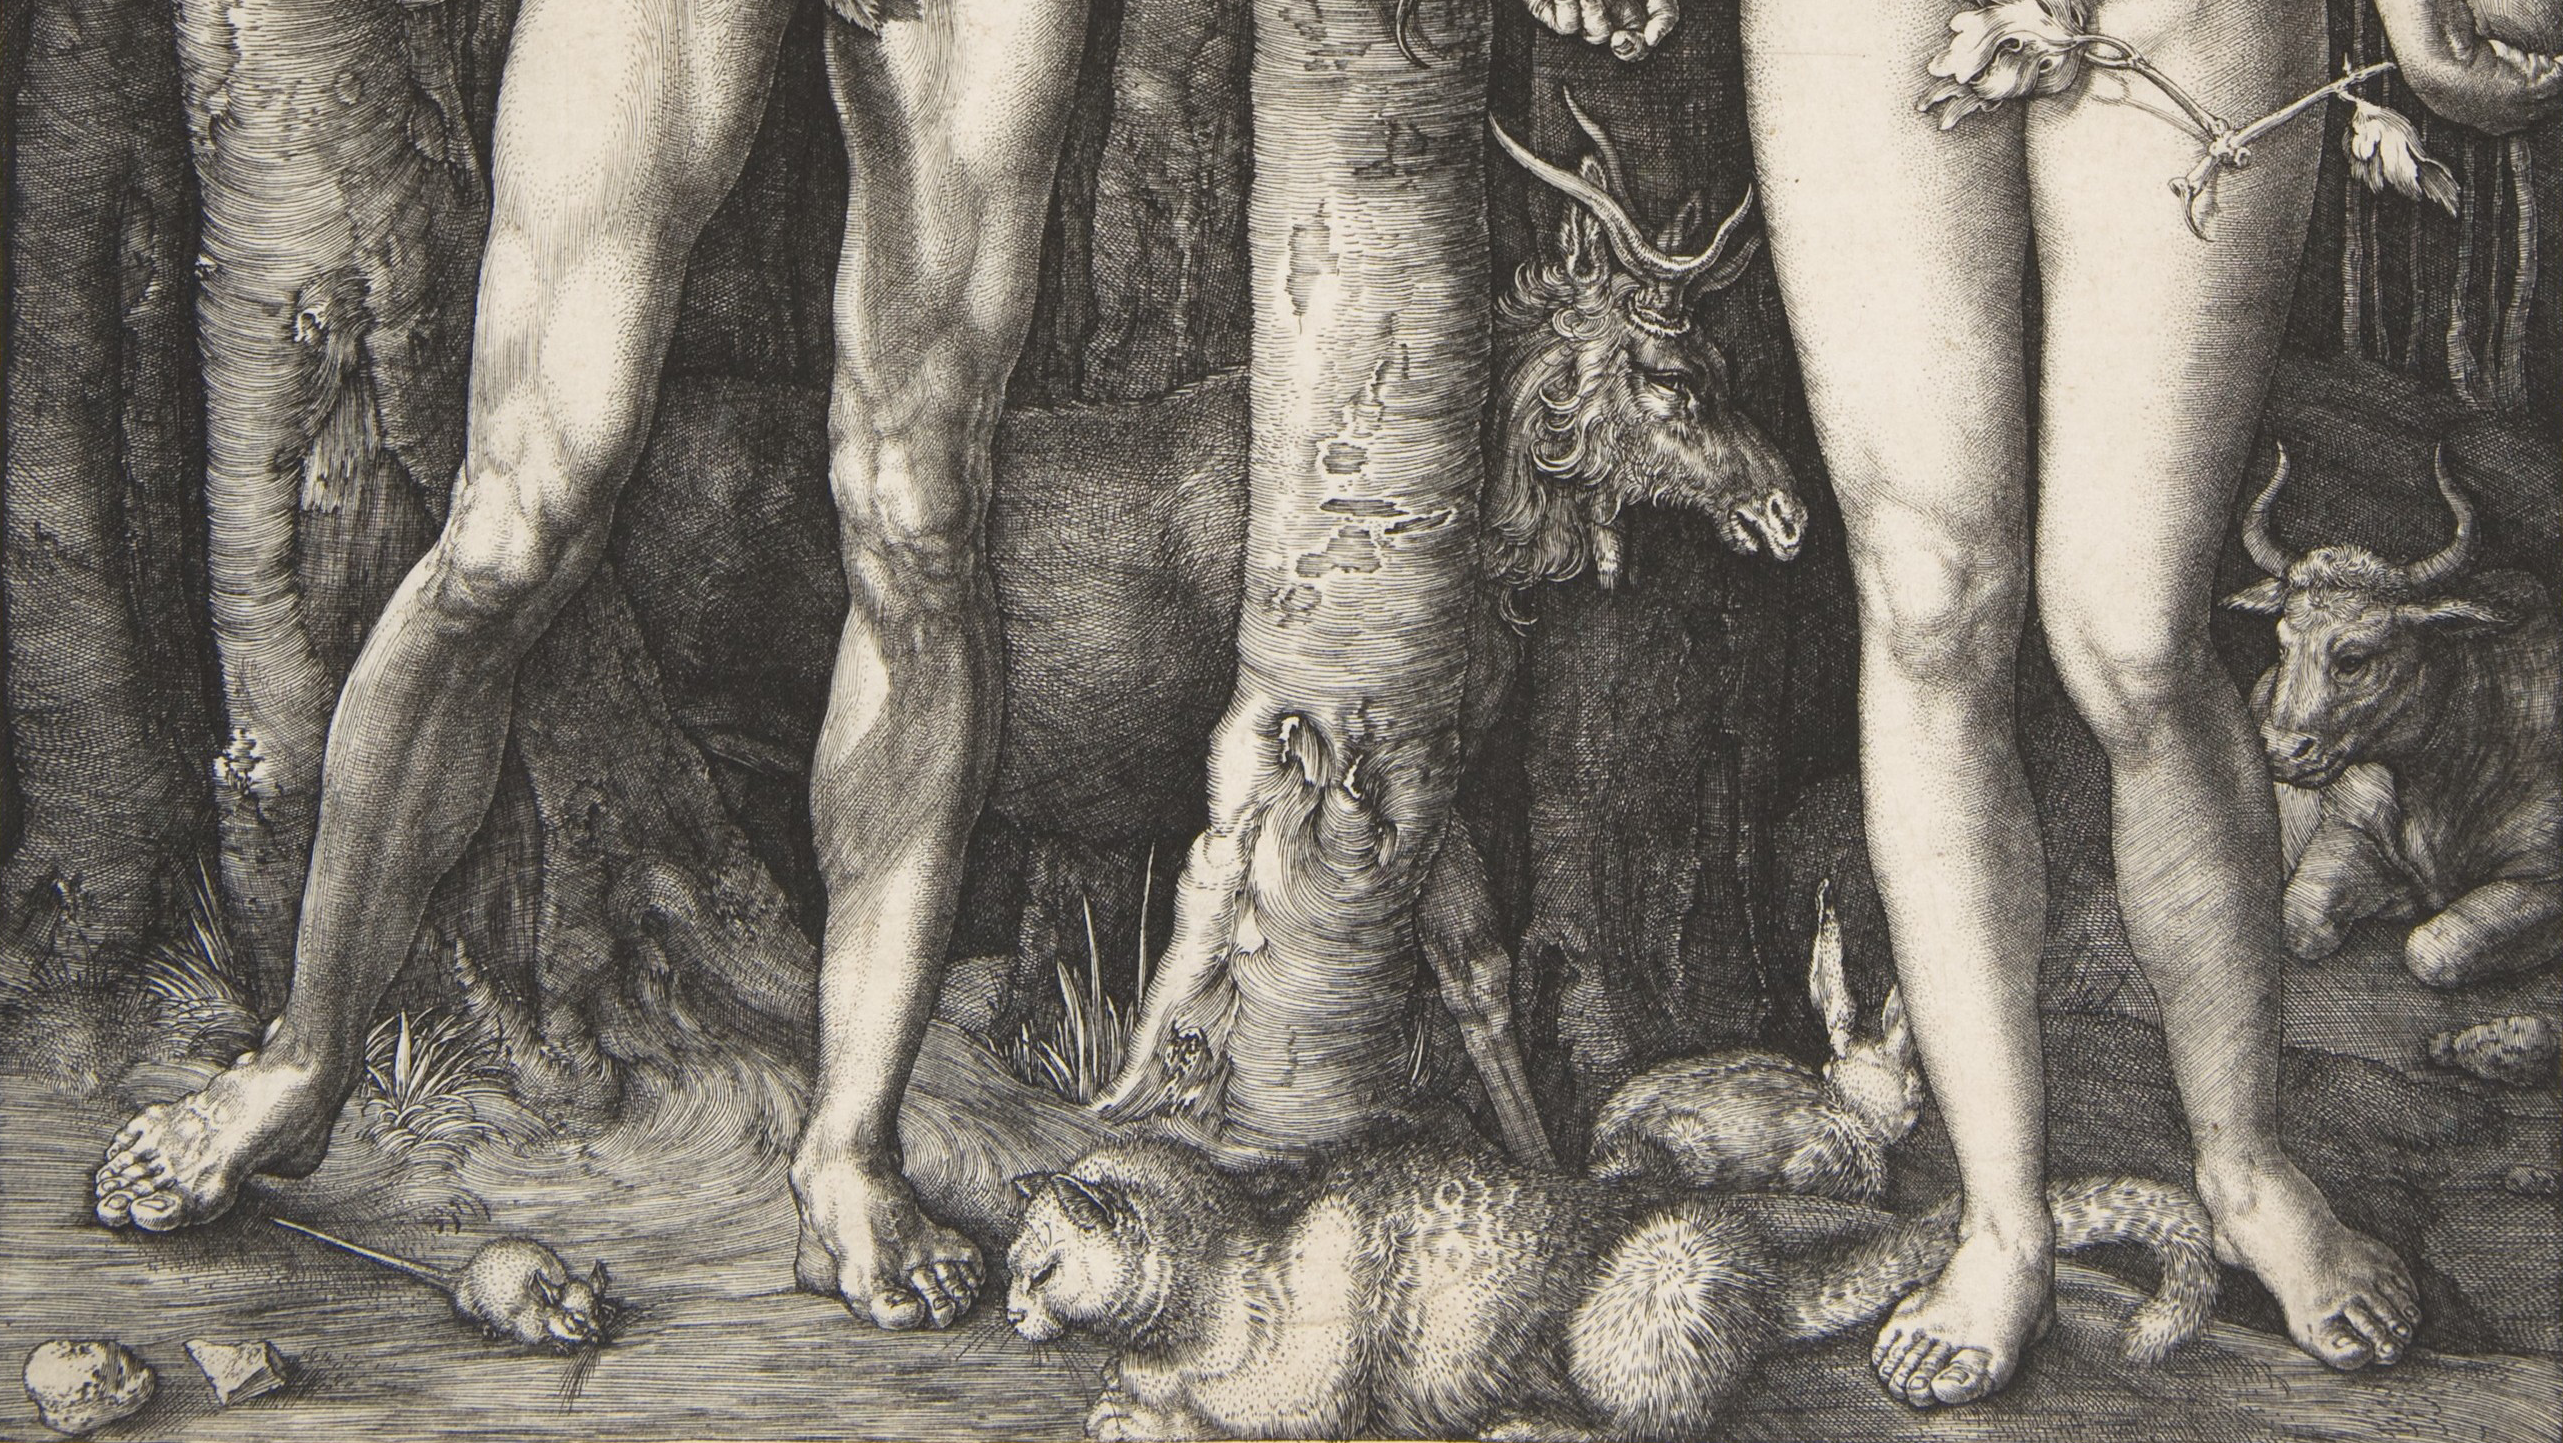 Albrecht Dürer, Adam and